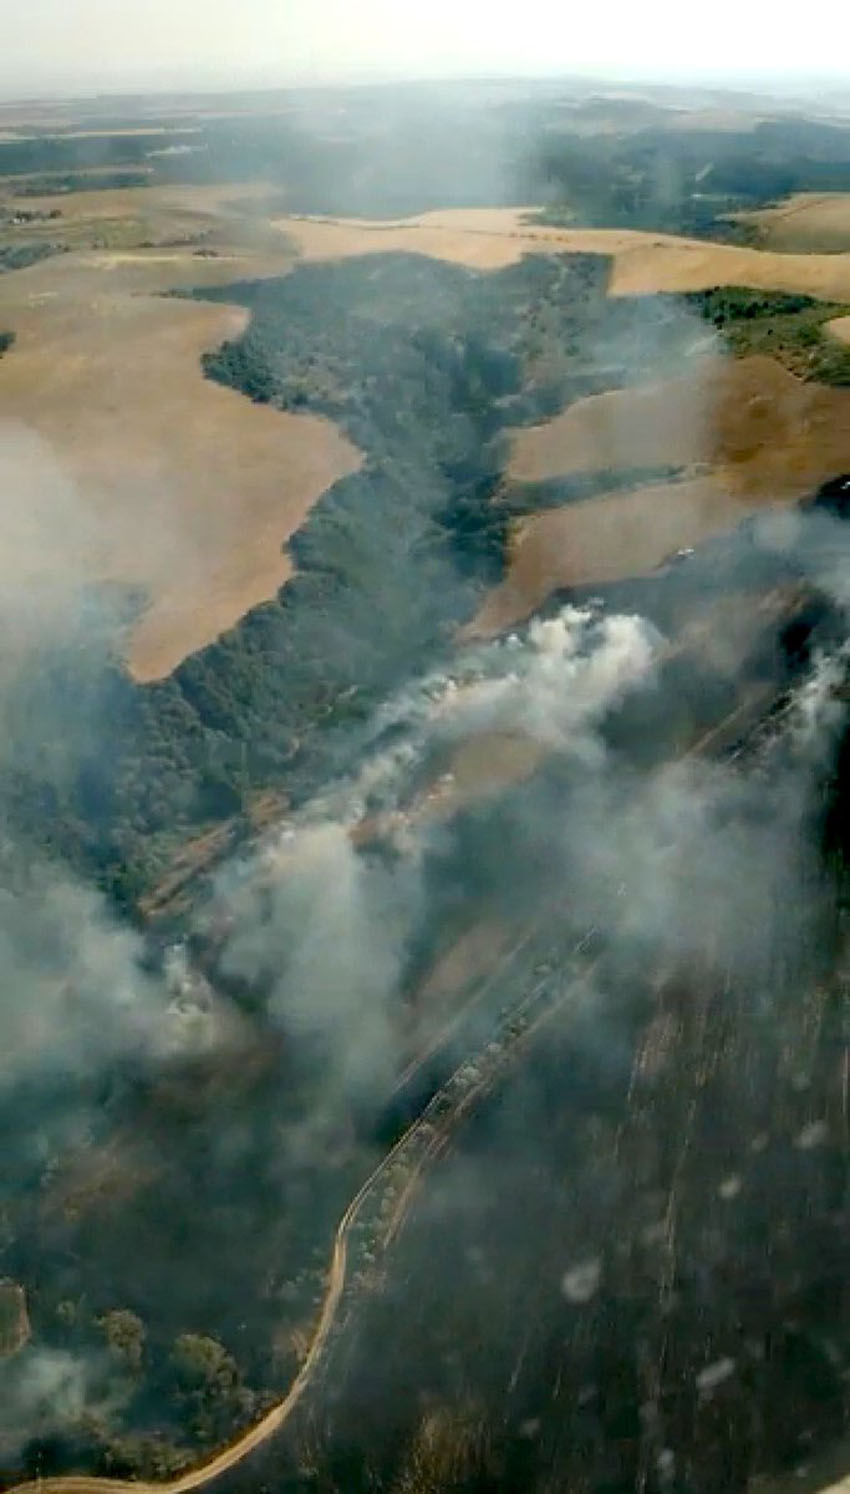 Incendio en la Labranza del Alto, en el Cerro Negro de Talavera. Fotos: @AT_Brif